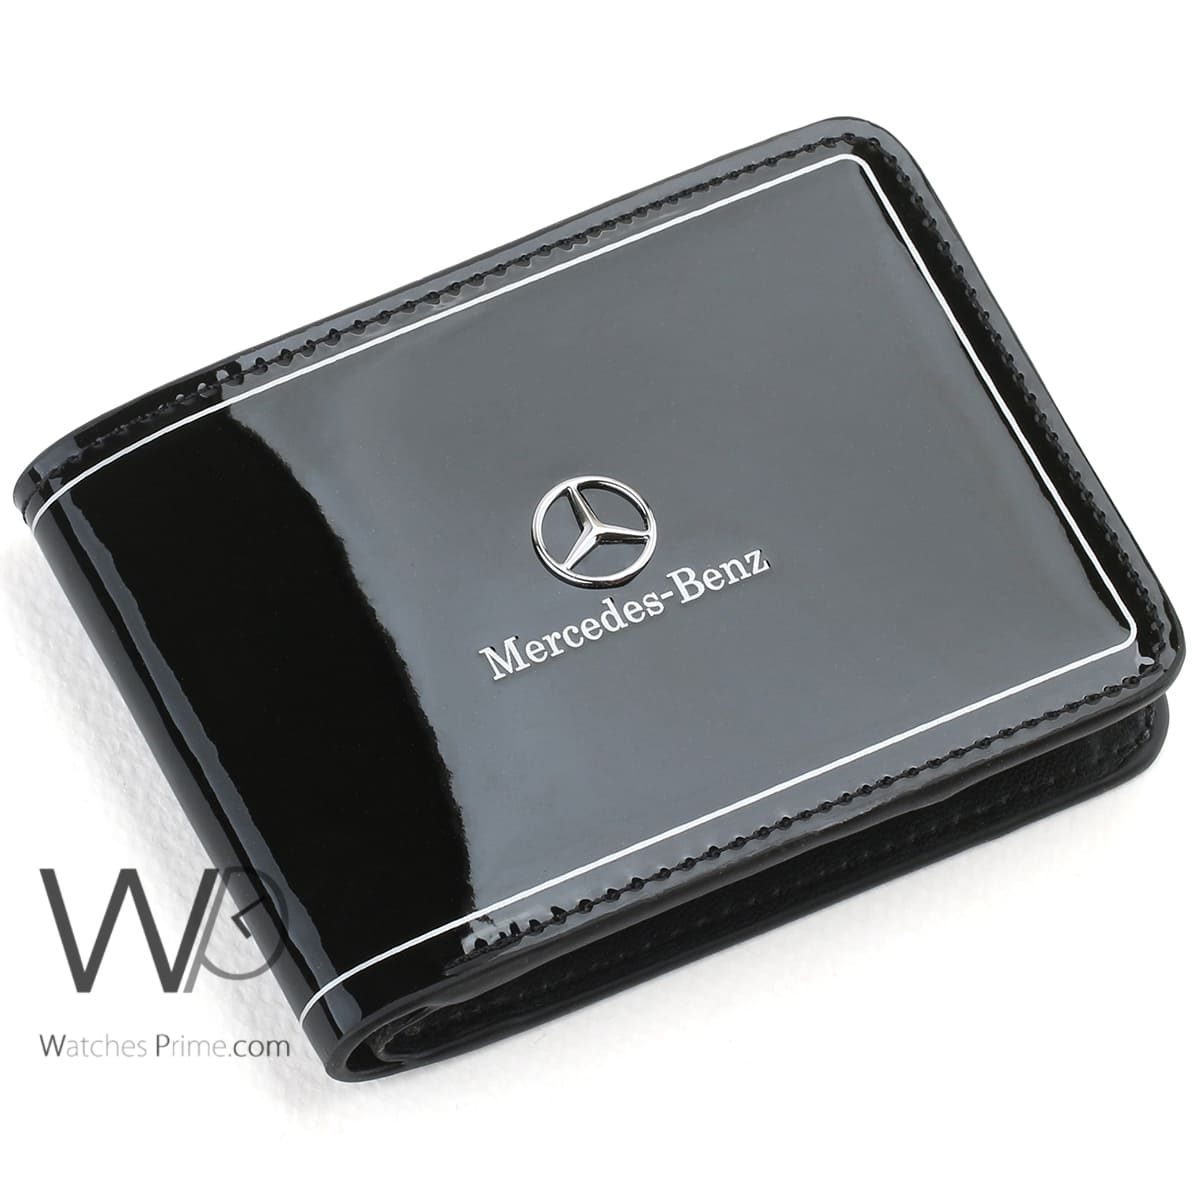 Mercedes Benz Wallet Black For Men